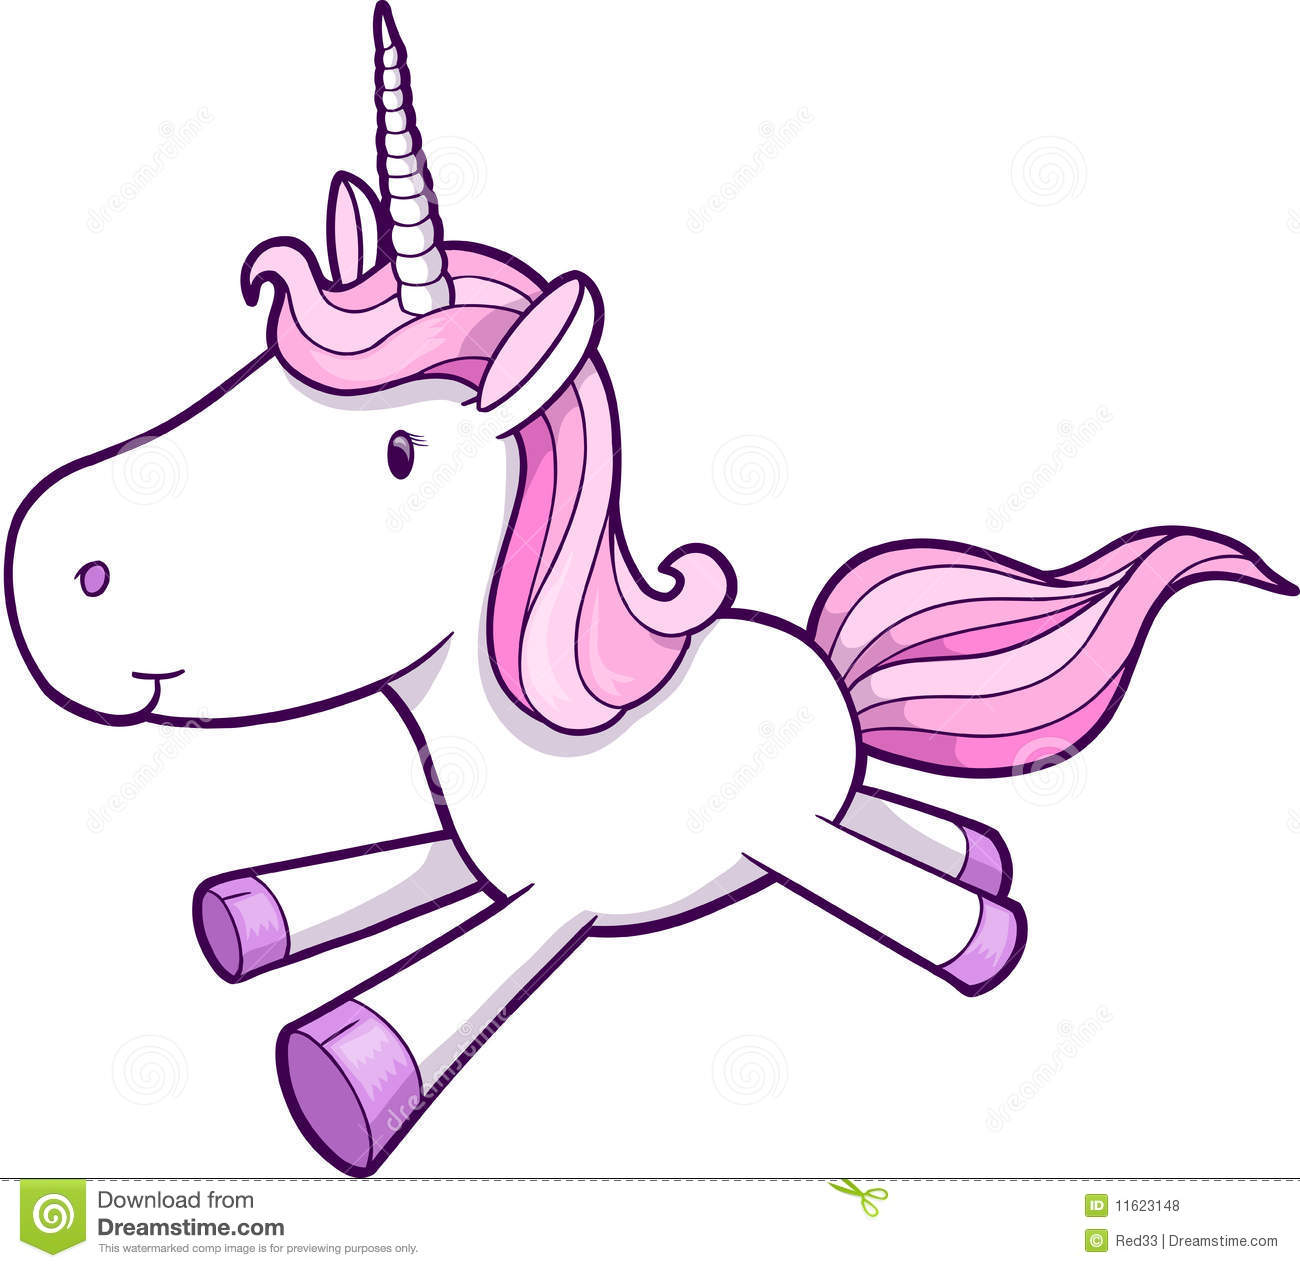 animated unicorn clipart - photo #49